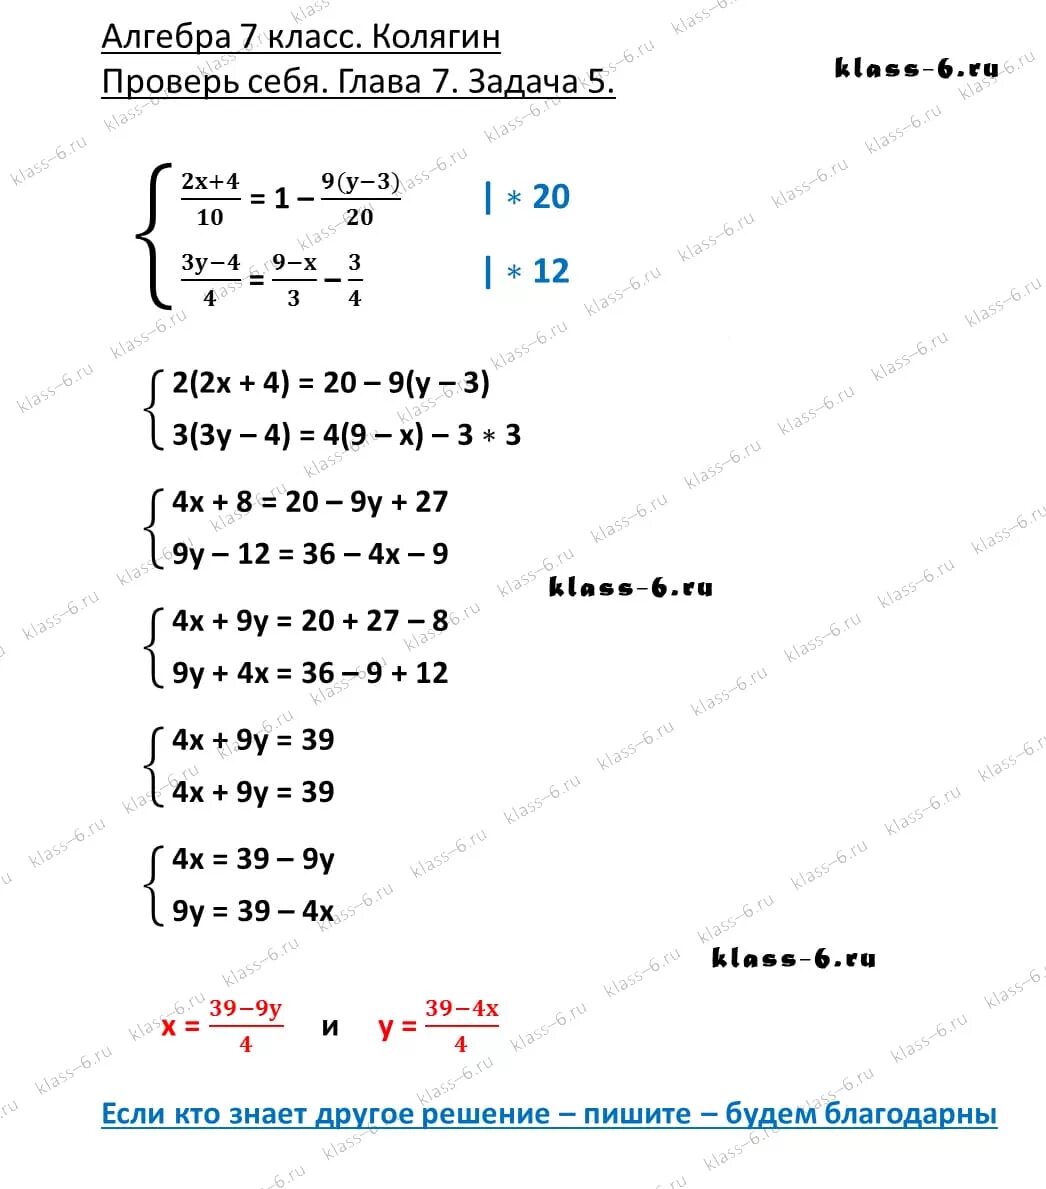 Учебник колягин ответы. Алгебре 7 класс Колягин уравнение первой степени. Колягин проверь себя 7 класс 1 глава.